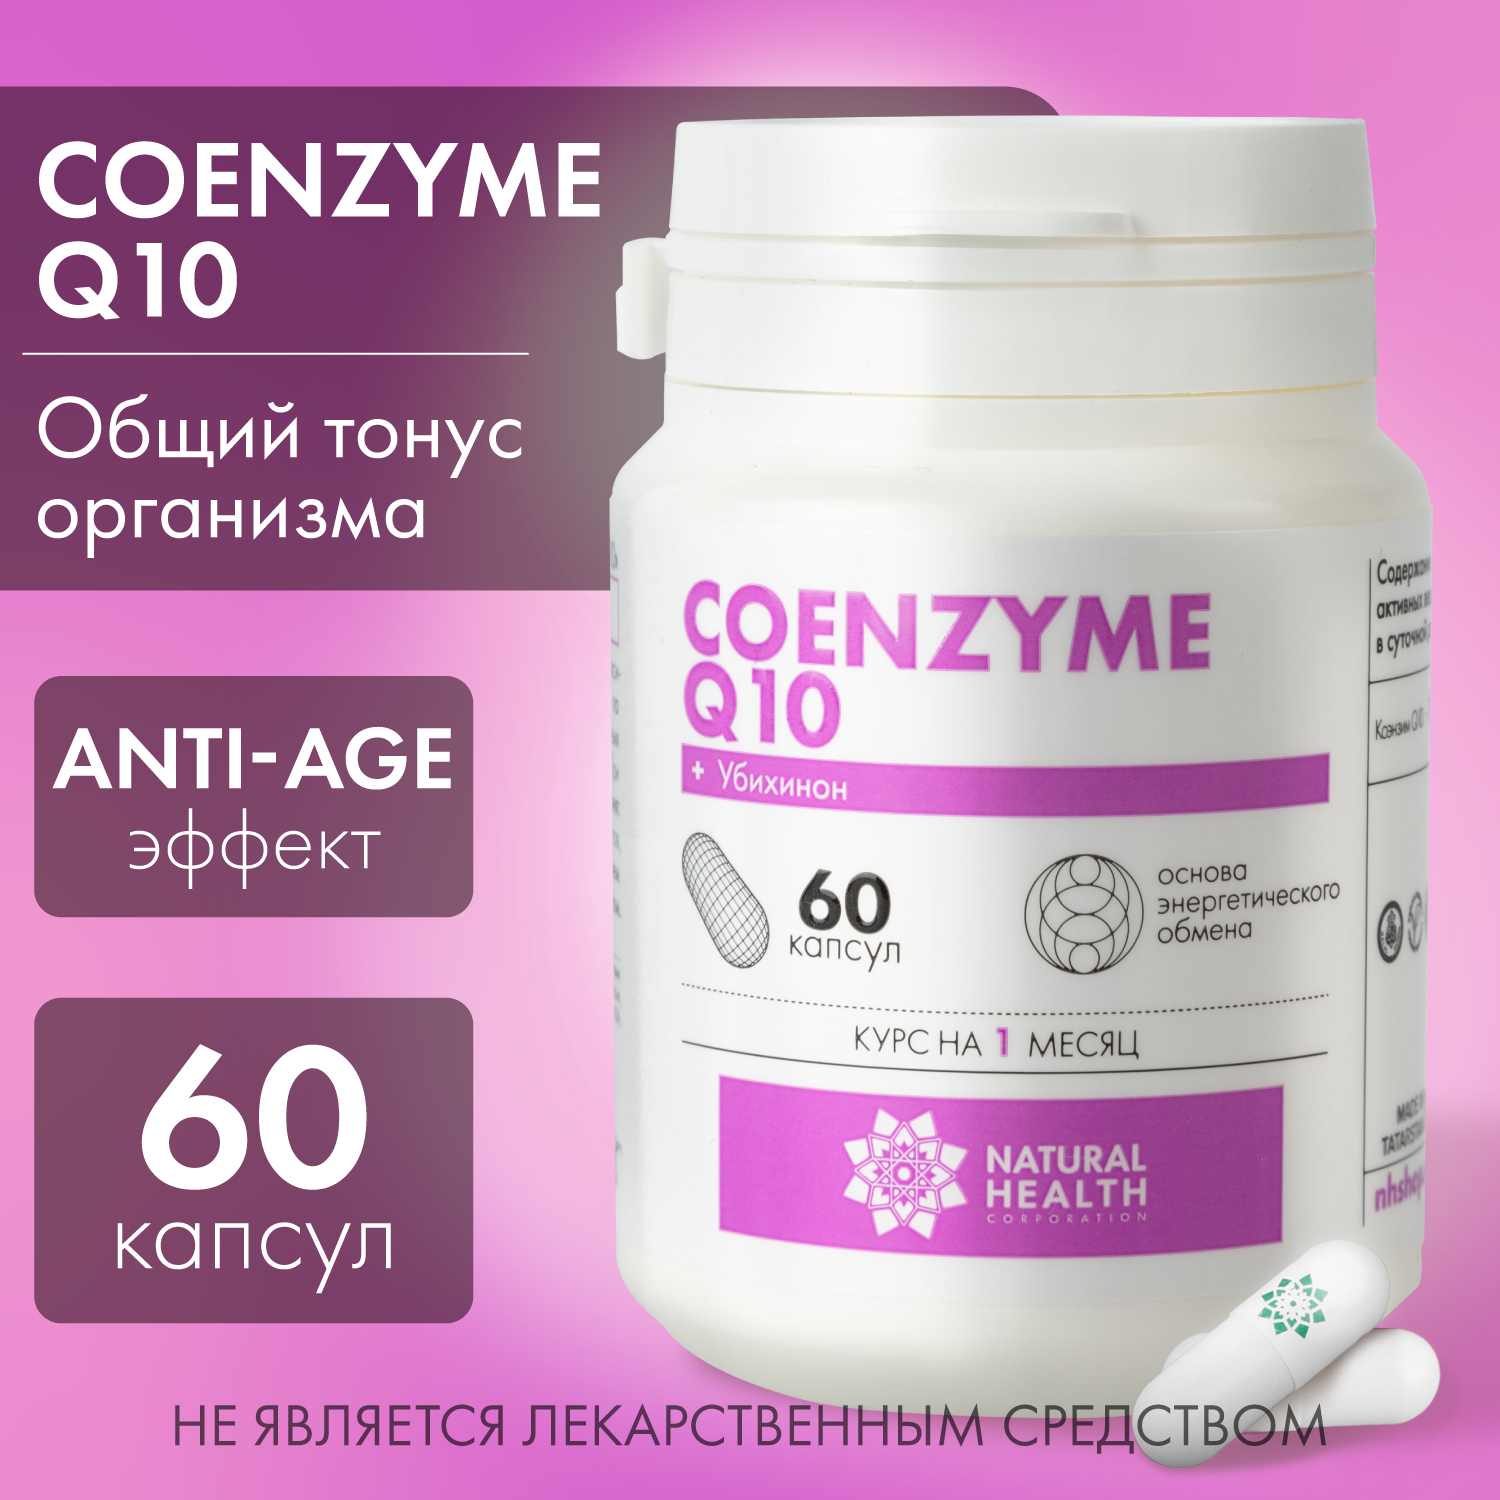 Коэнзим Q10 в капсулах / БАД для повышение общего тонуса, умственной активности, Coenzyme Q10, Natural Health, Натуральное Здоровье